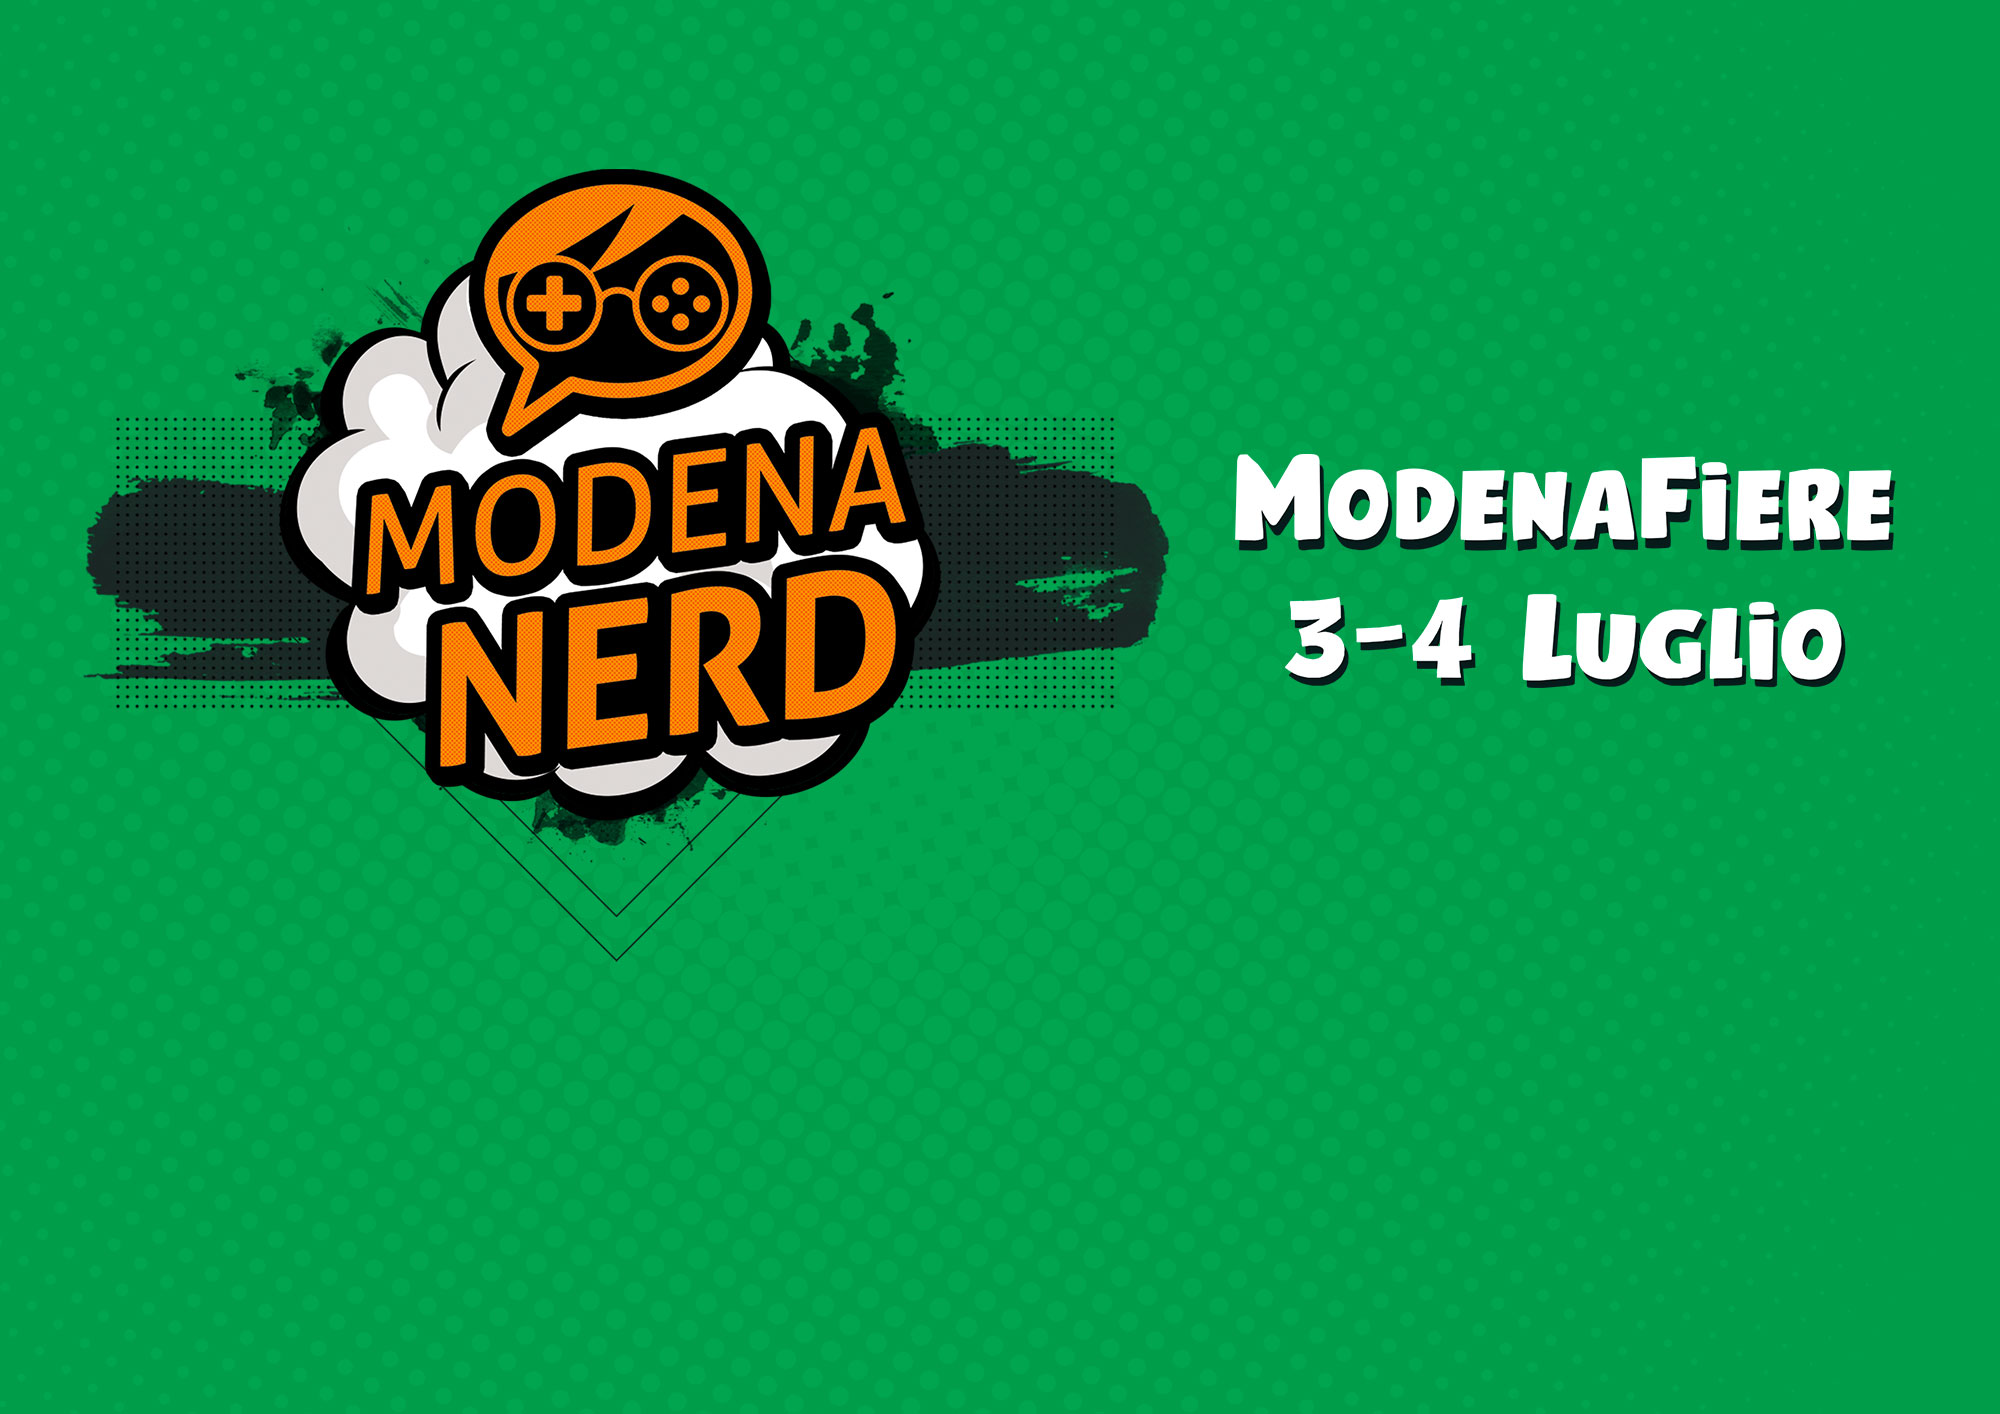 Modena Nerd 2021